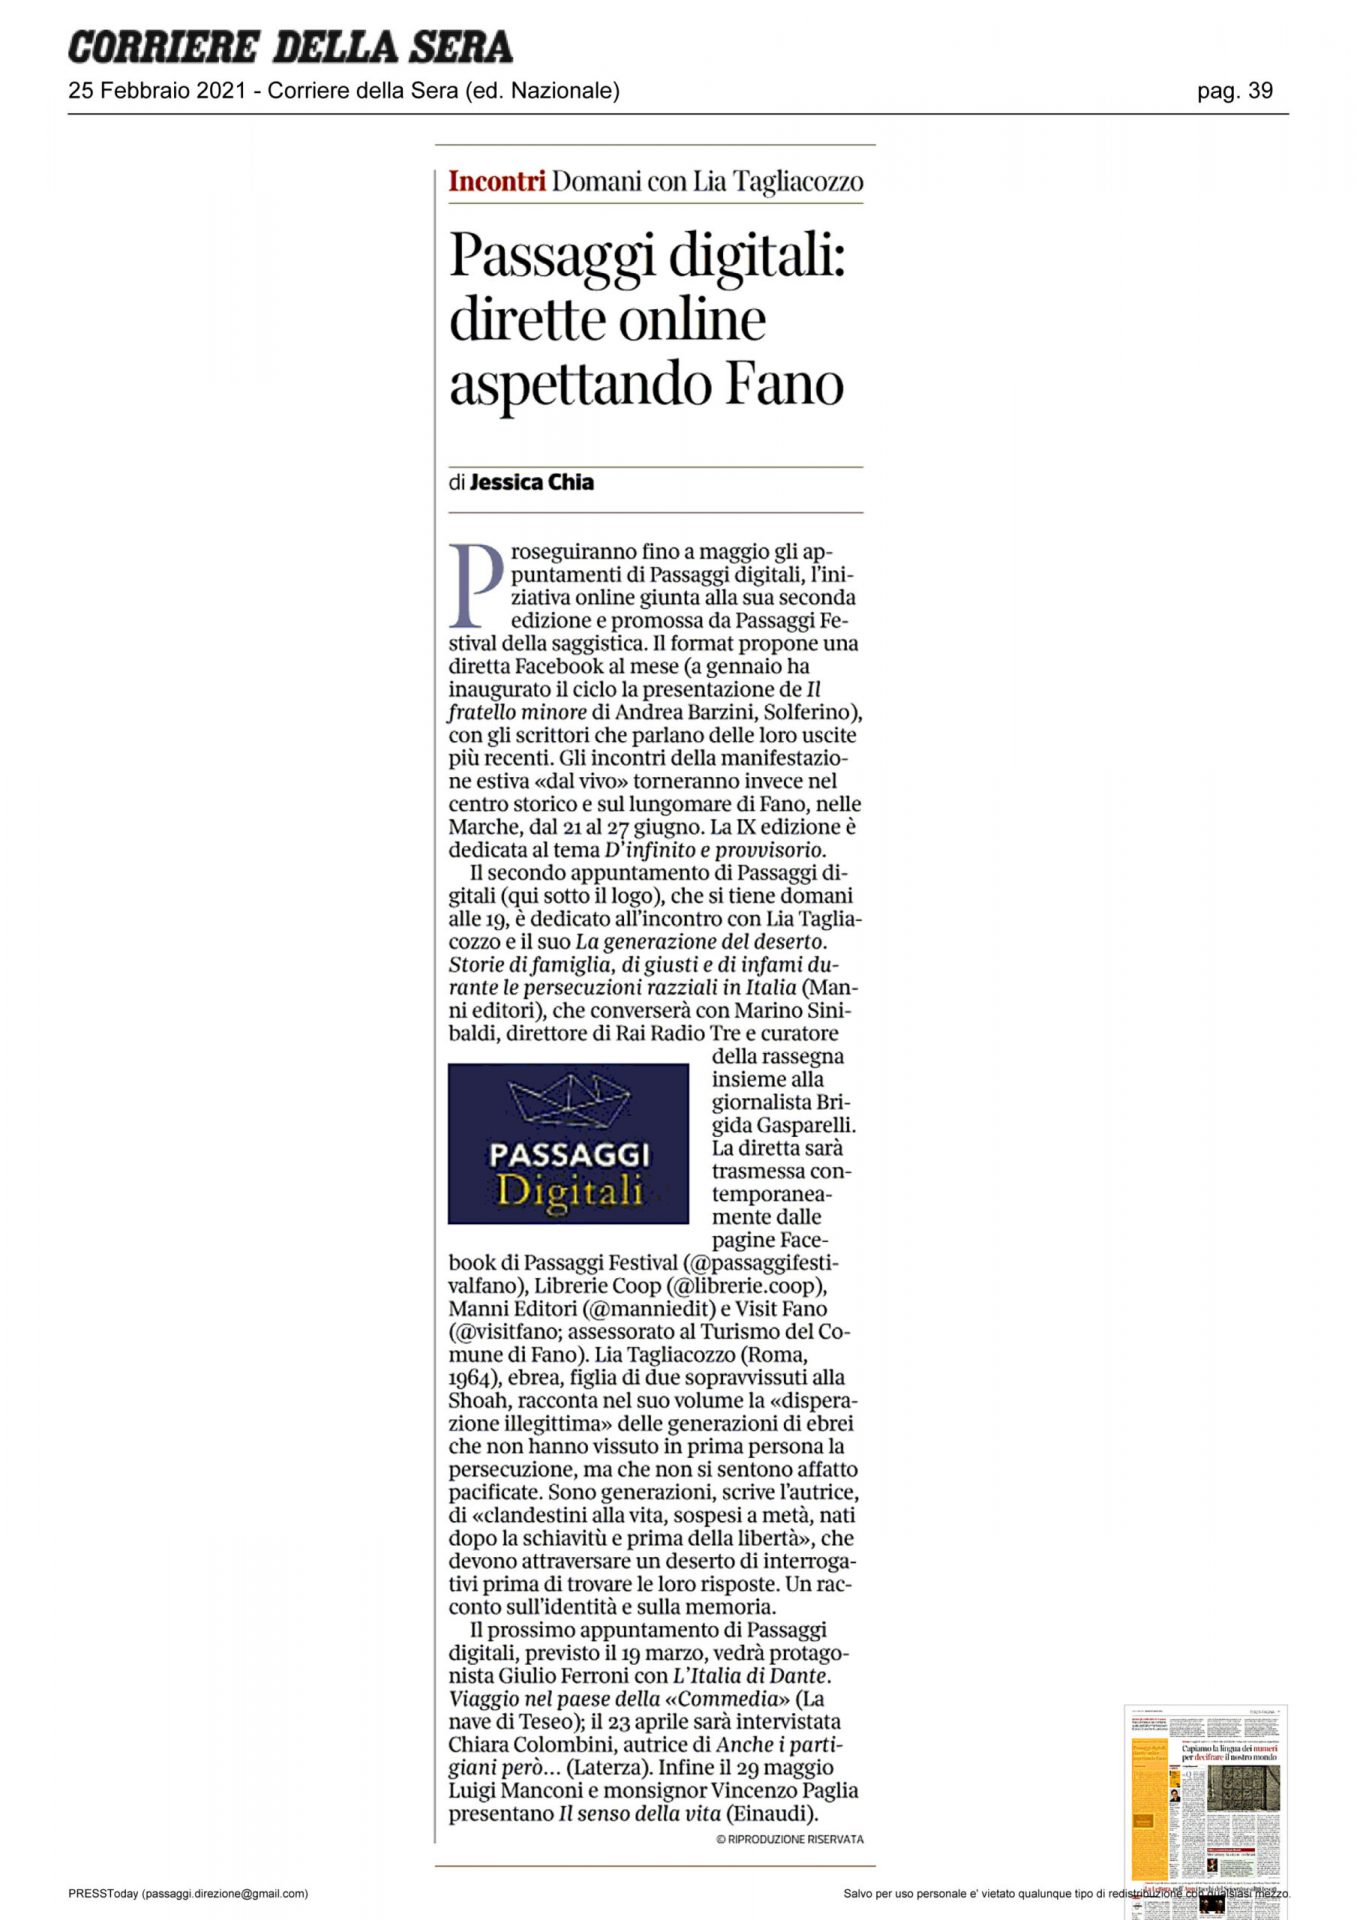 Corriere_della_Sera_passaggi_digitali_dirette_on_line_aspettando_fano